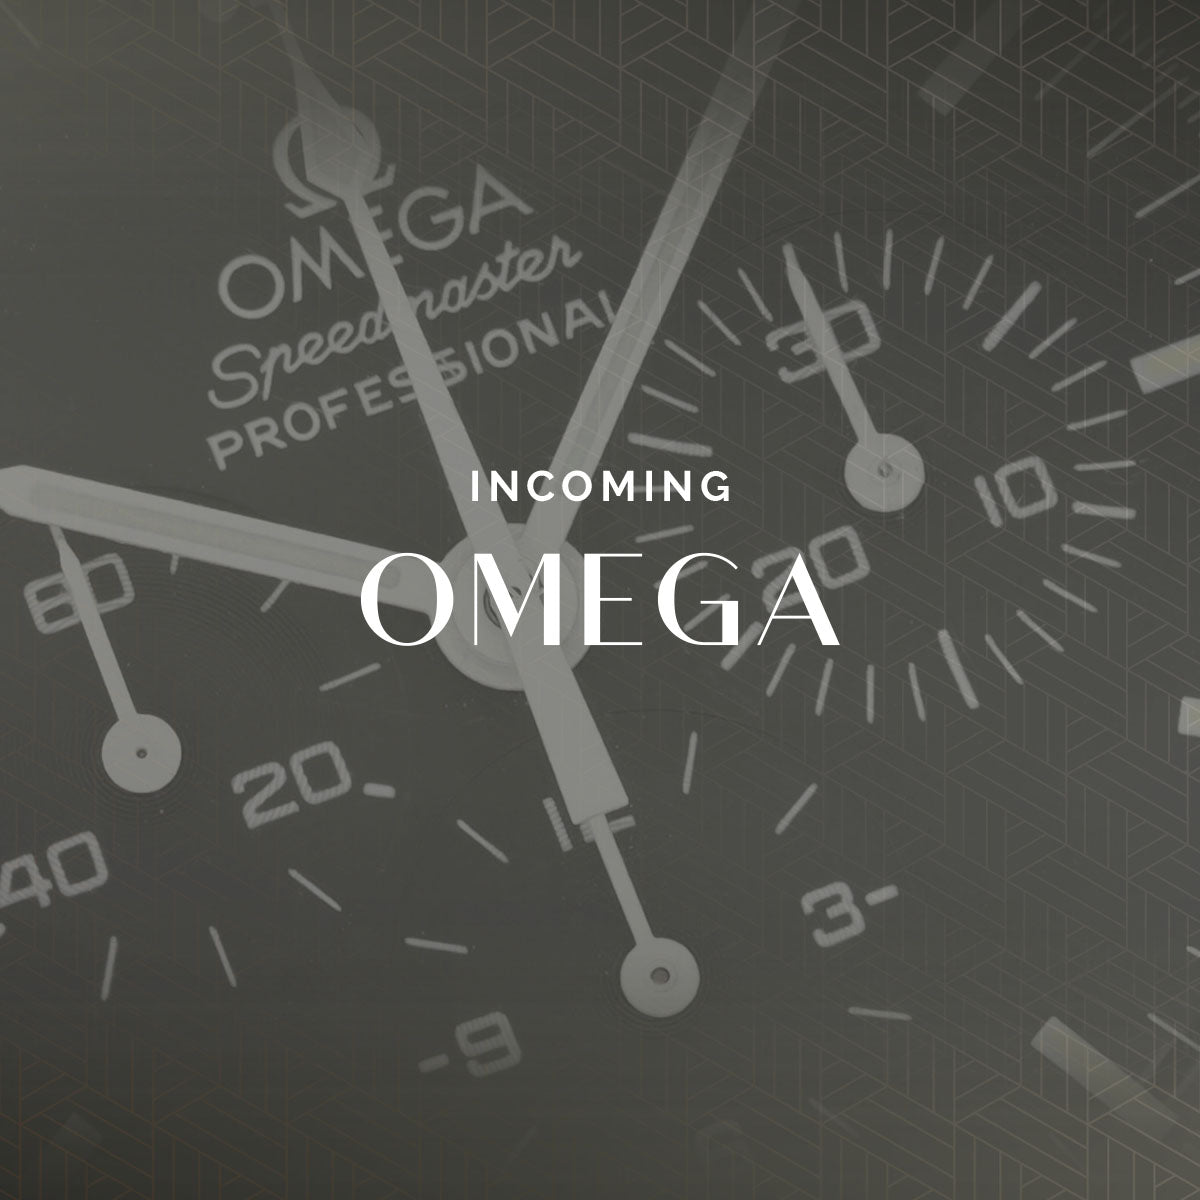 Omega Speedmaster "Ultra Holy Grail" Ref ST376.0822 - incoming